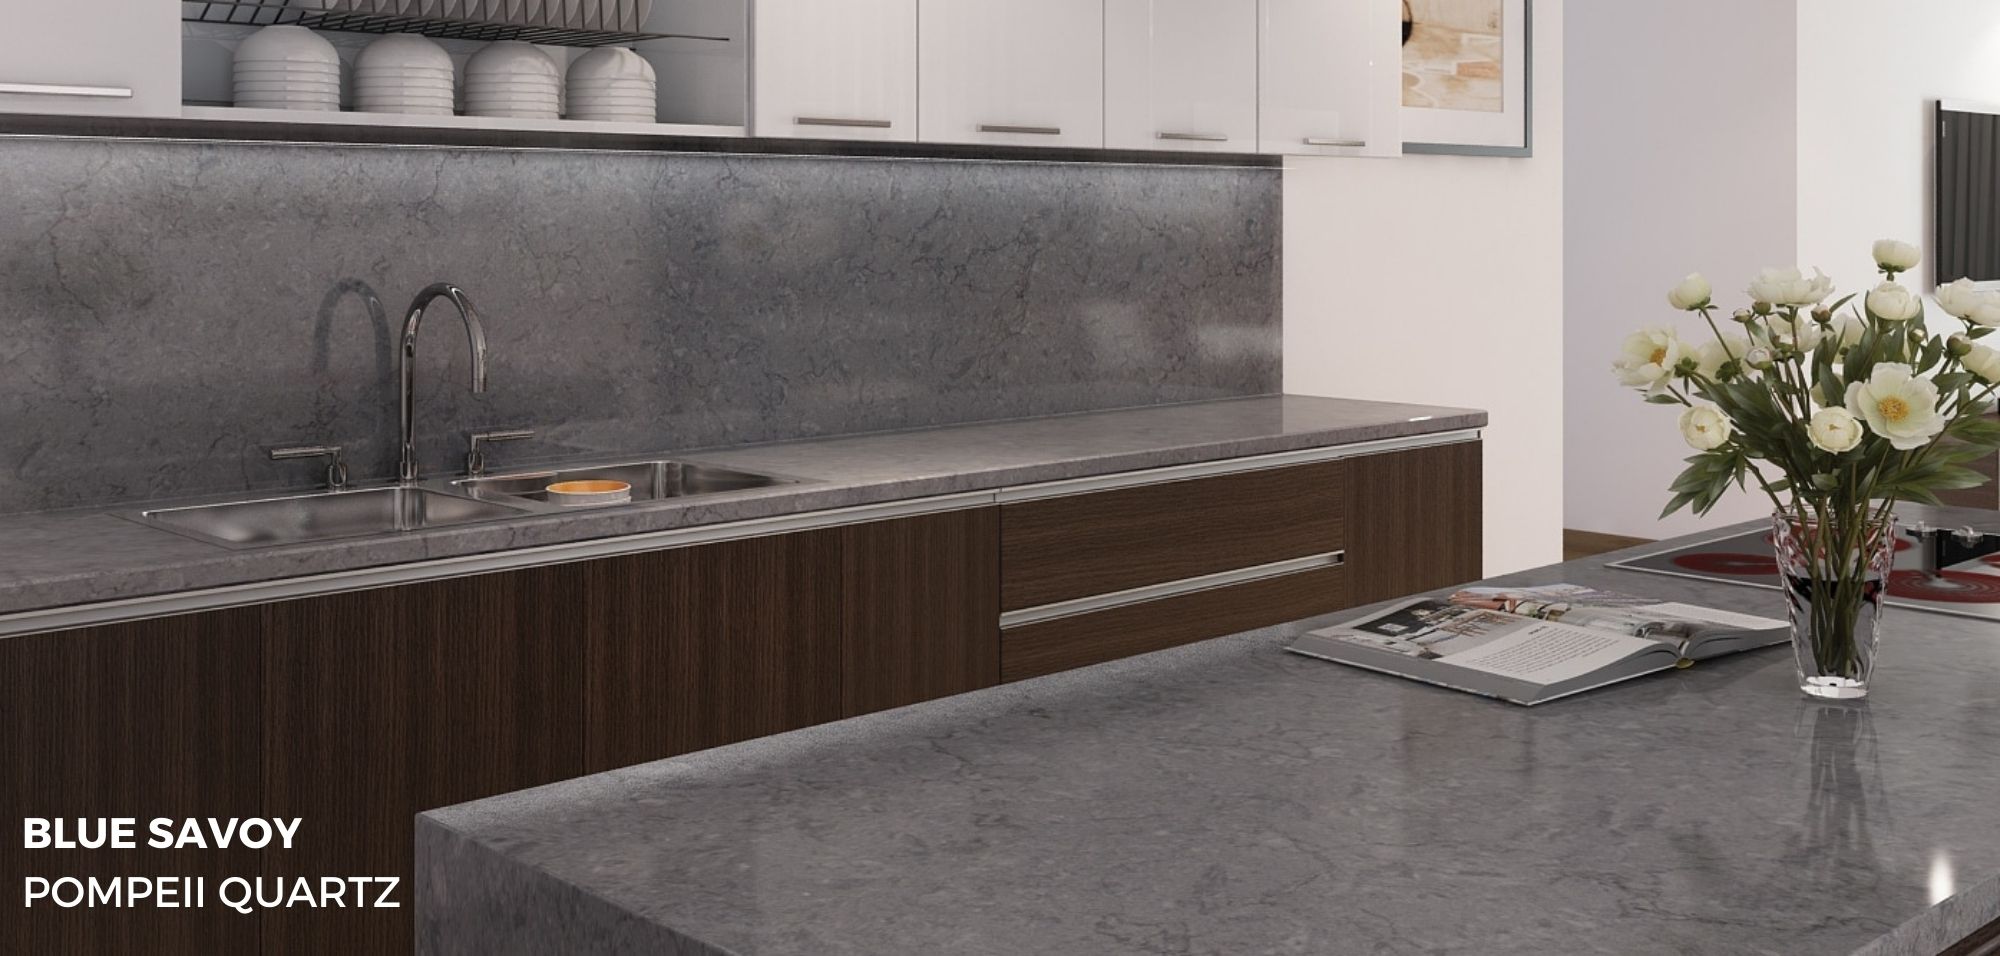 Quartz vs Concrete Countertops Blue Savoy Pompeii Quartz Kitchen Countertops with Full Height Backsplash